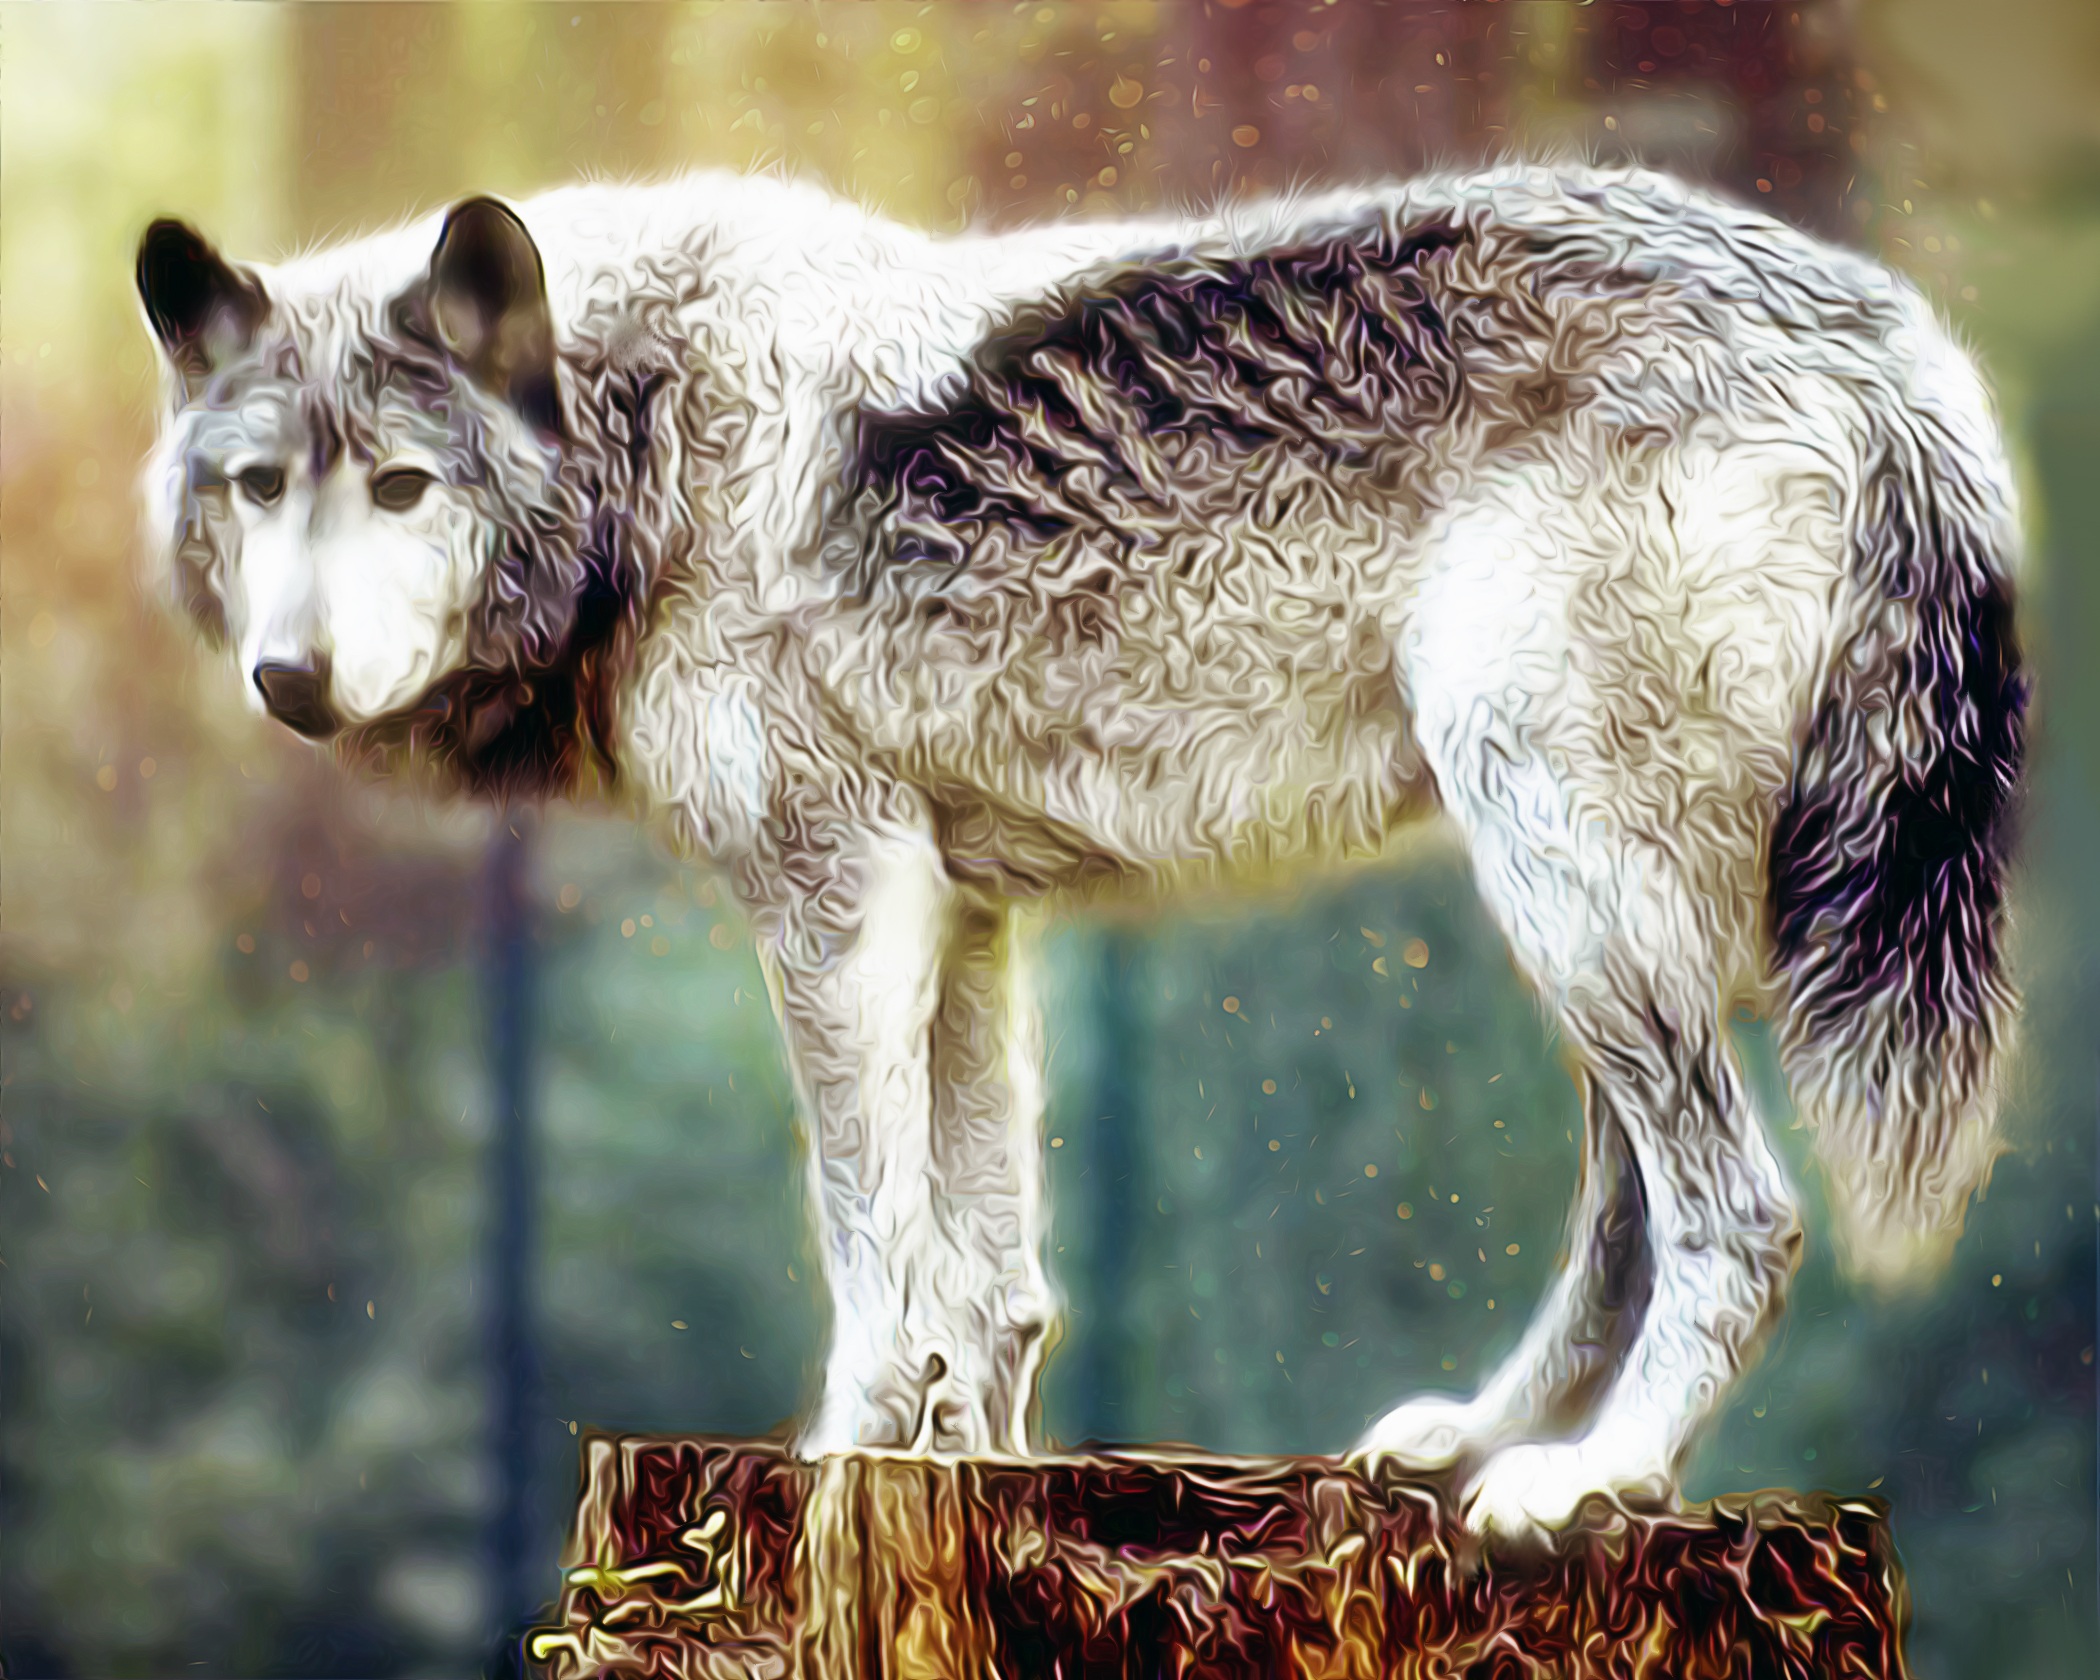 Мосбахский волк